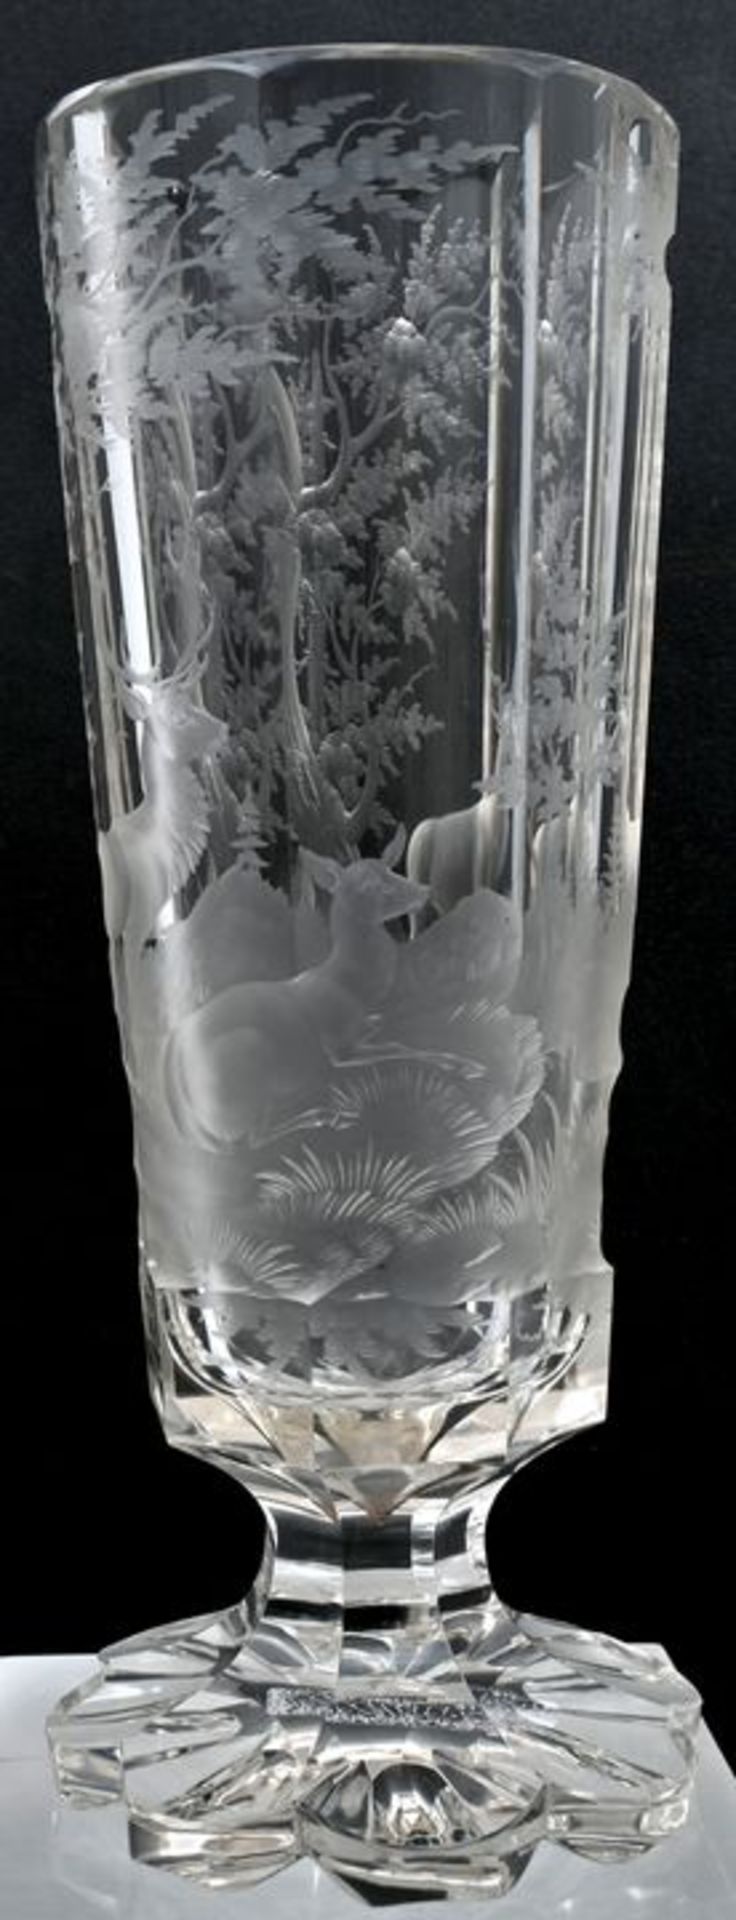 Jagdpokal, 19./ 20. Jh.Farbloses Glas, konische Wandung achtseitig facettiert, gezänkelter F